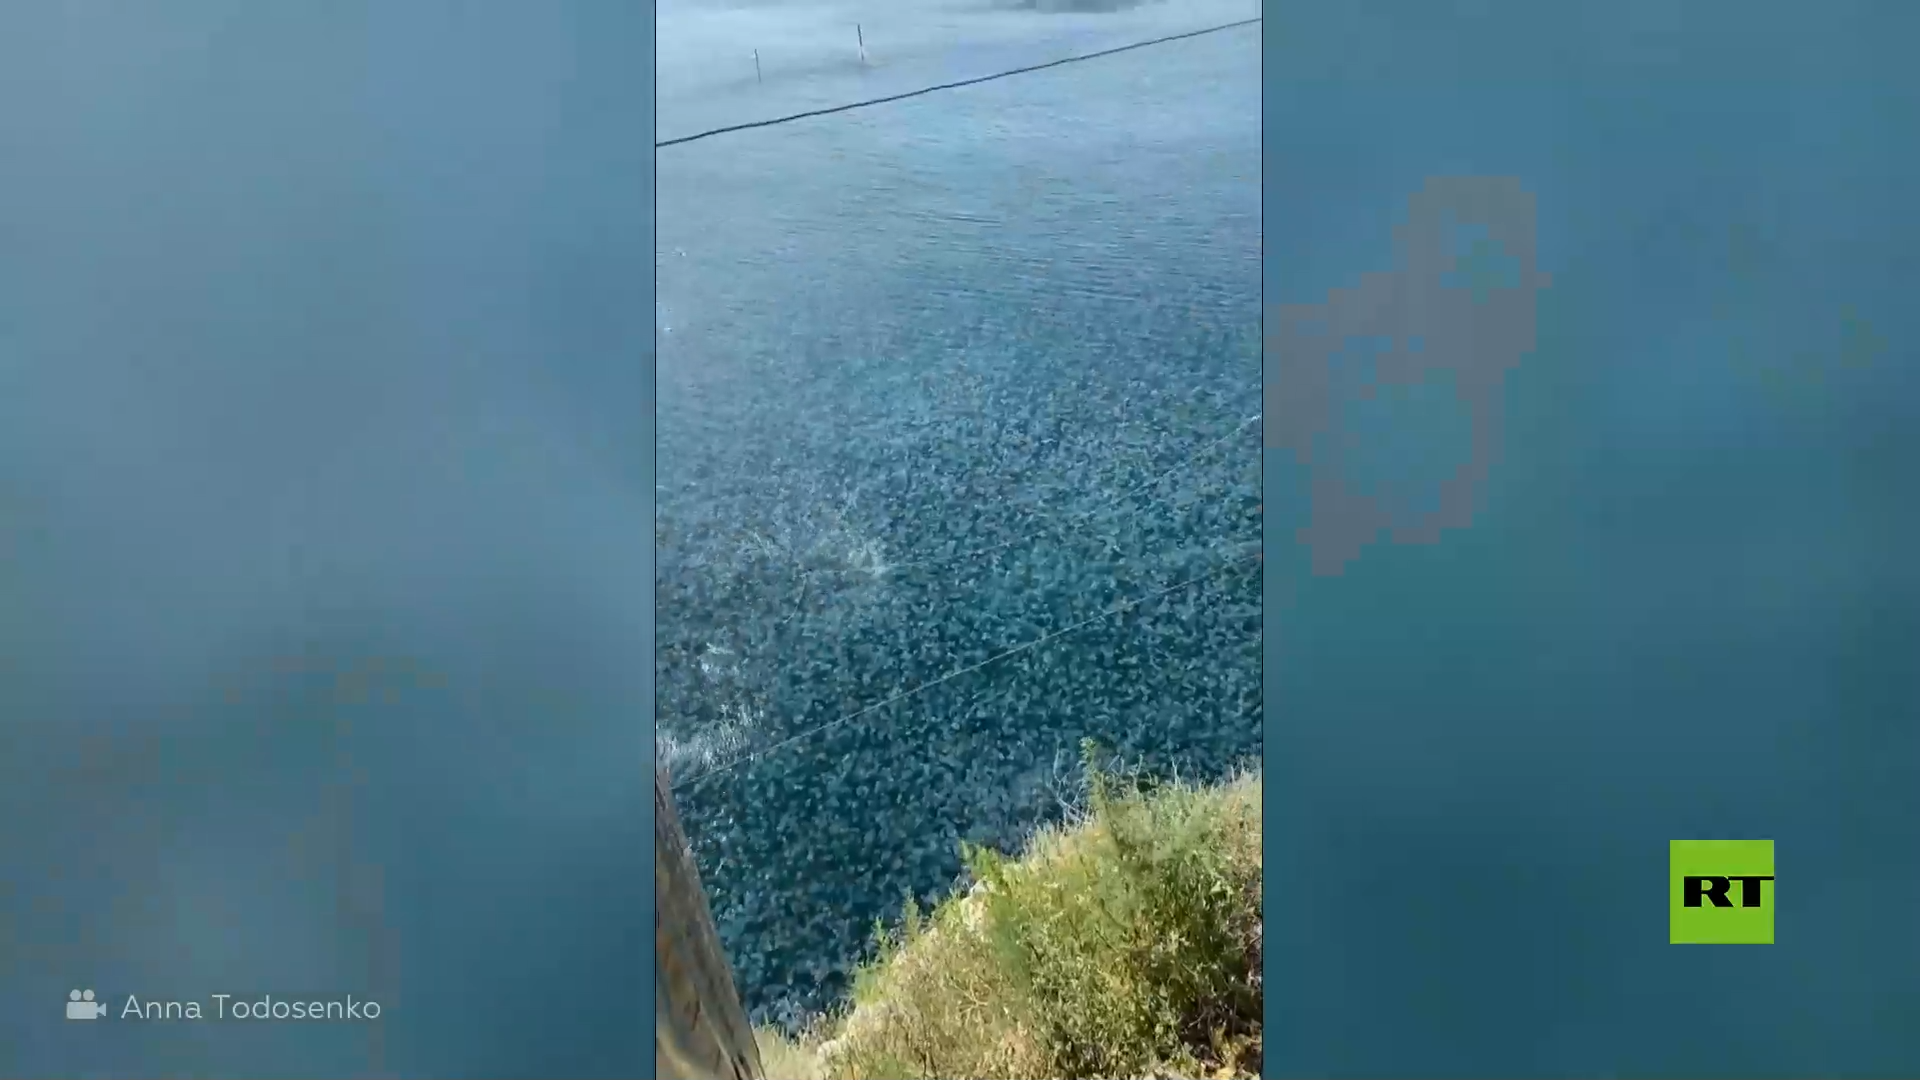 عشرات الآلاف من قناديل البحر العملاقة تملأ شاطئا بشبه جزيرة القرم